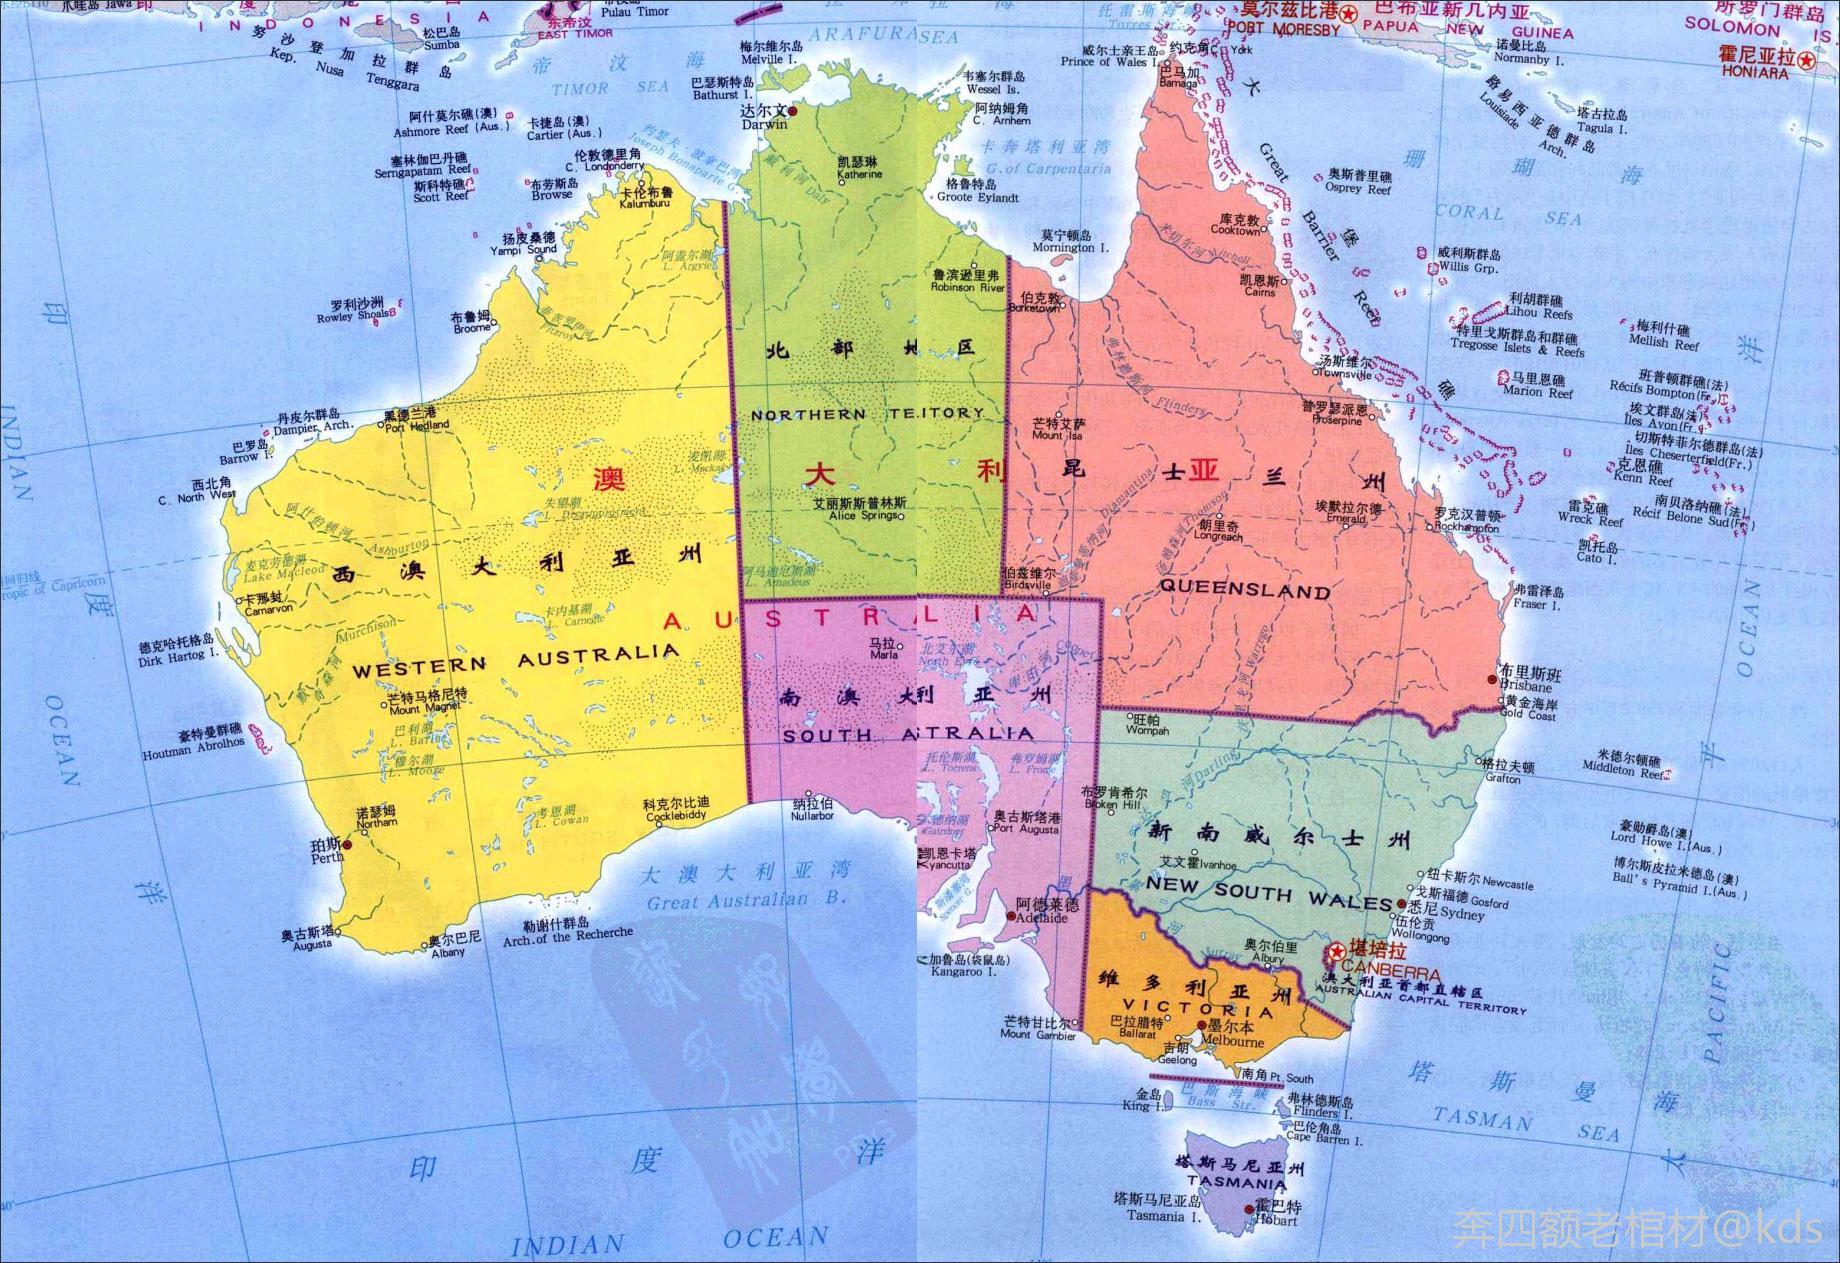 大家觉得澳大利亚和新西兰的面积和环境可以生活4亿人口吗?